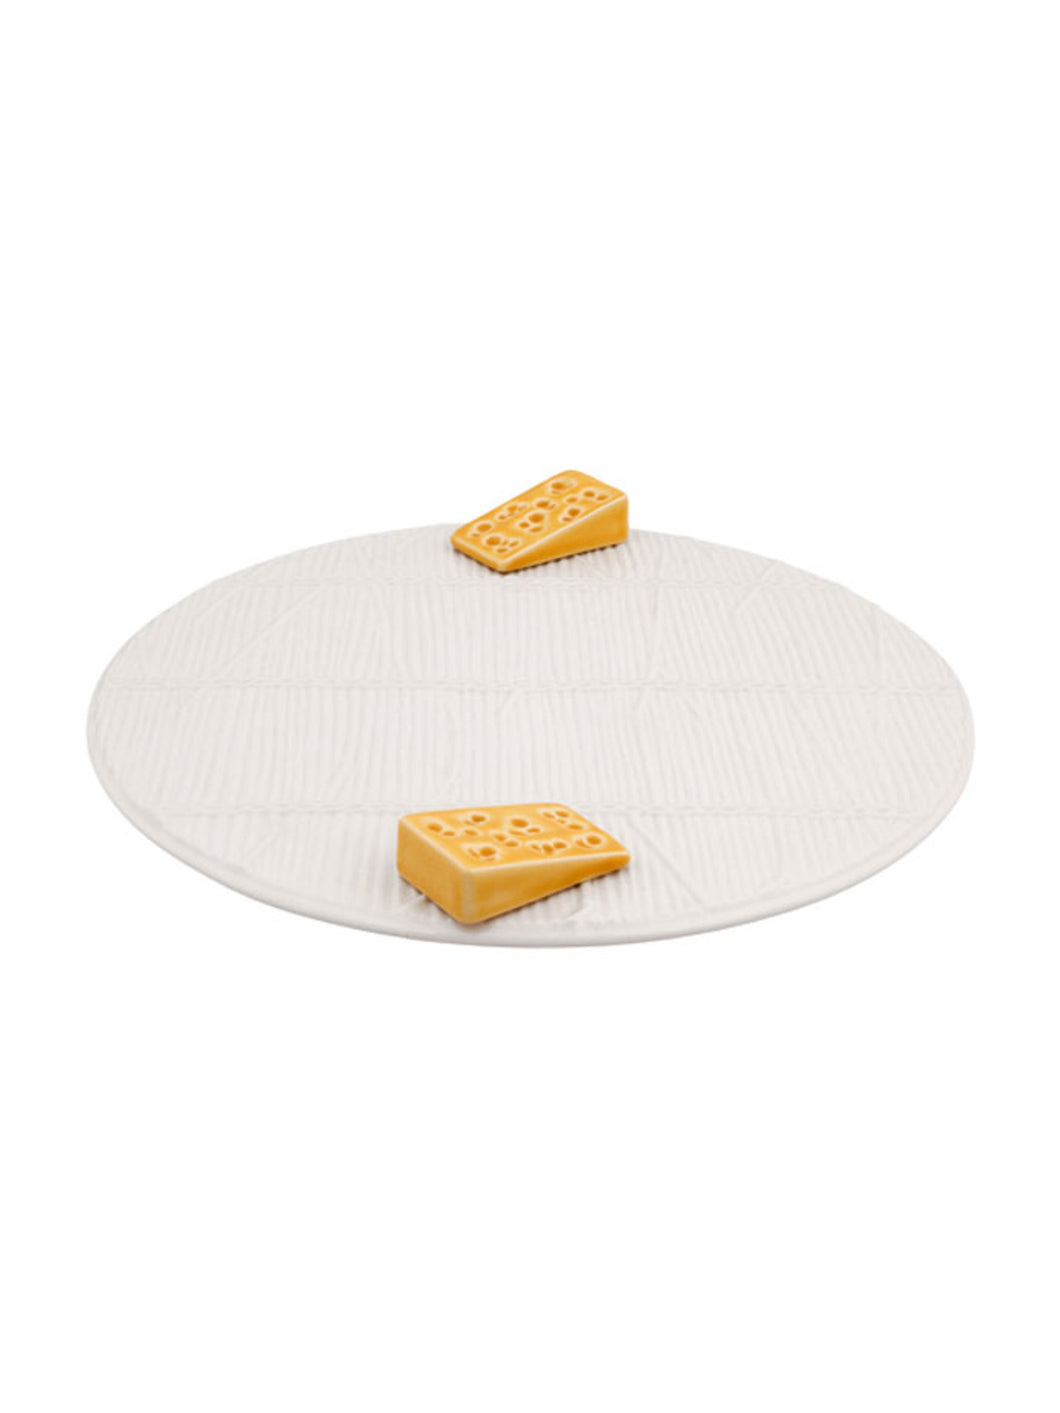 Bordallo Pinheiro White Cheese Tray with Yellow Cheese